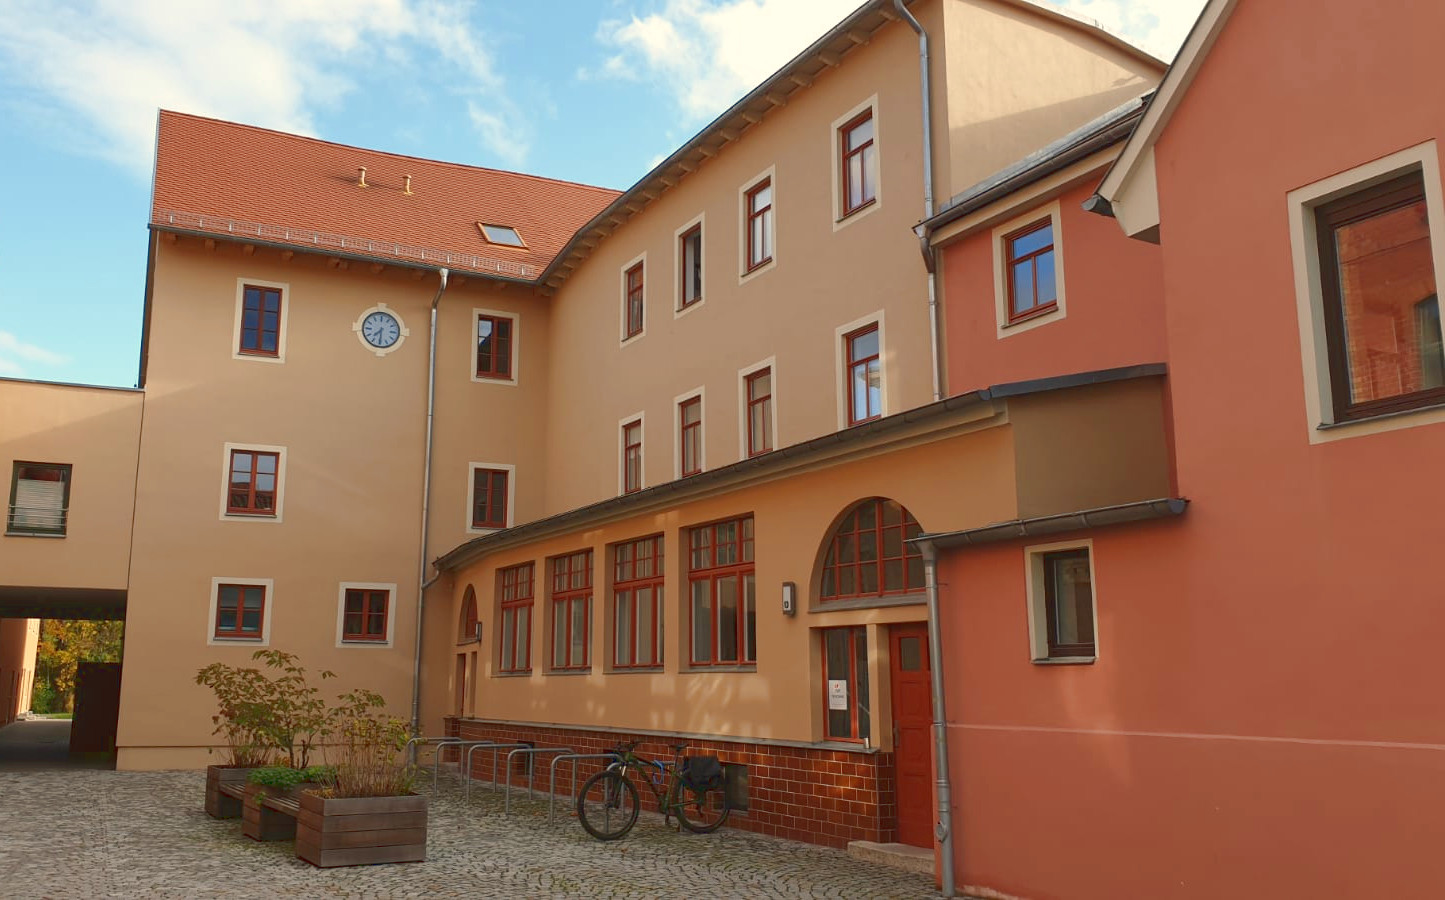 Ansicht Innenhof mit historischer Turmuhr, warme Farben